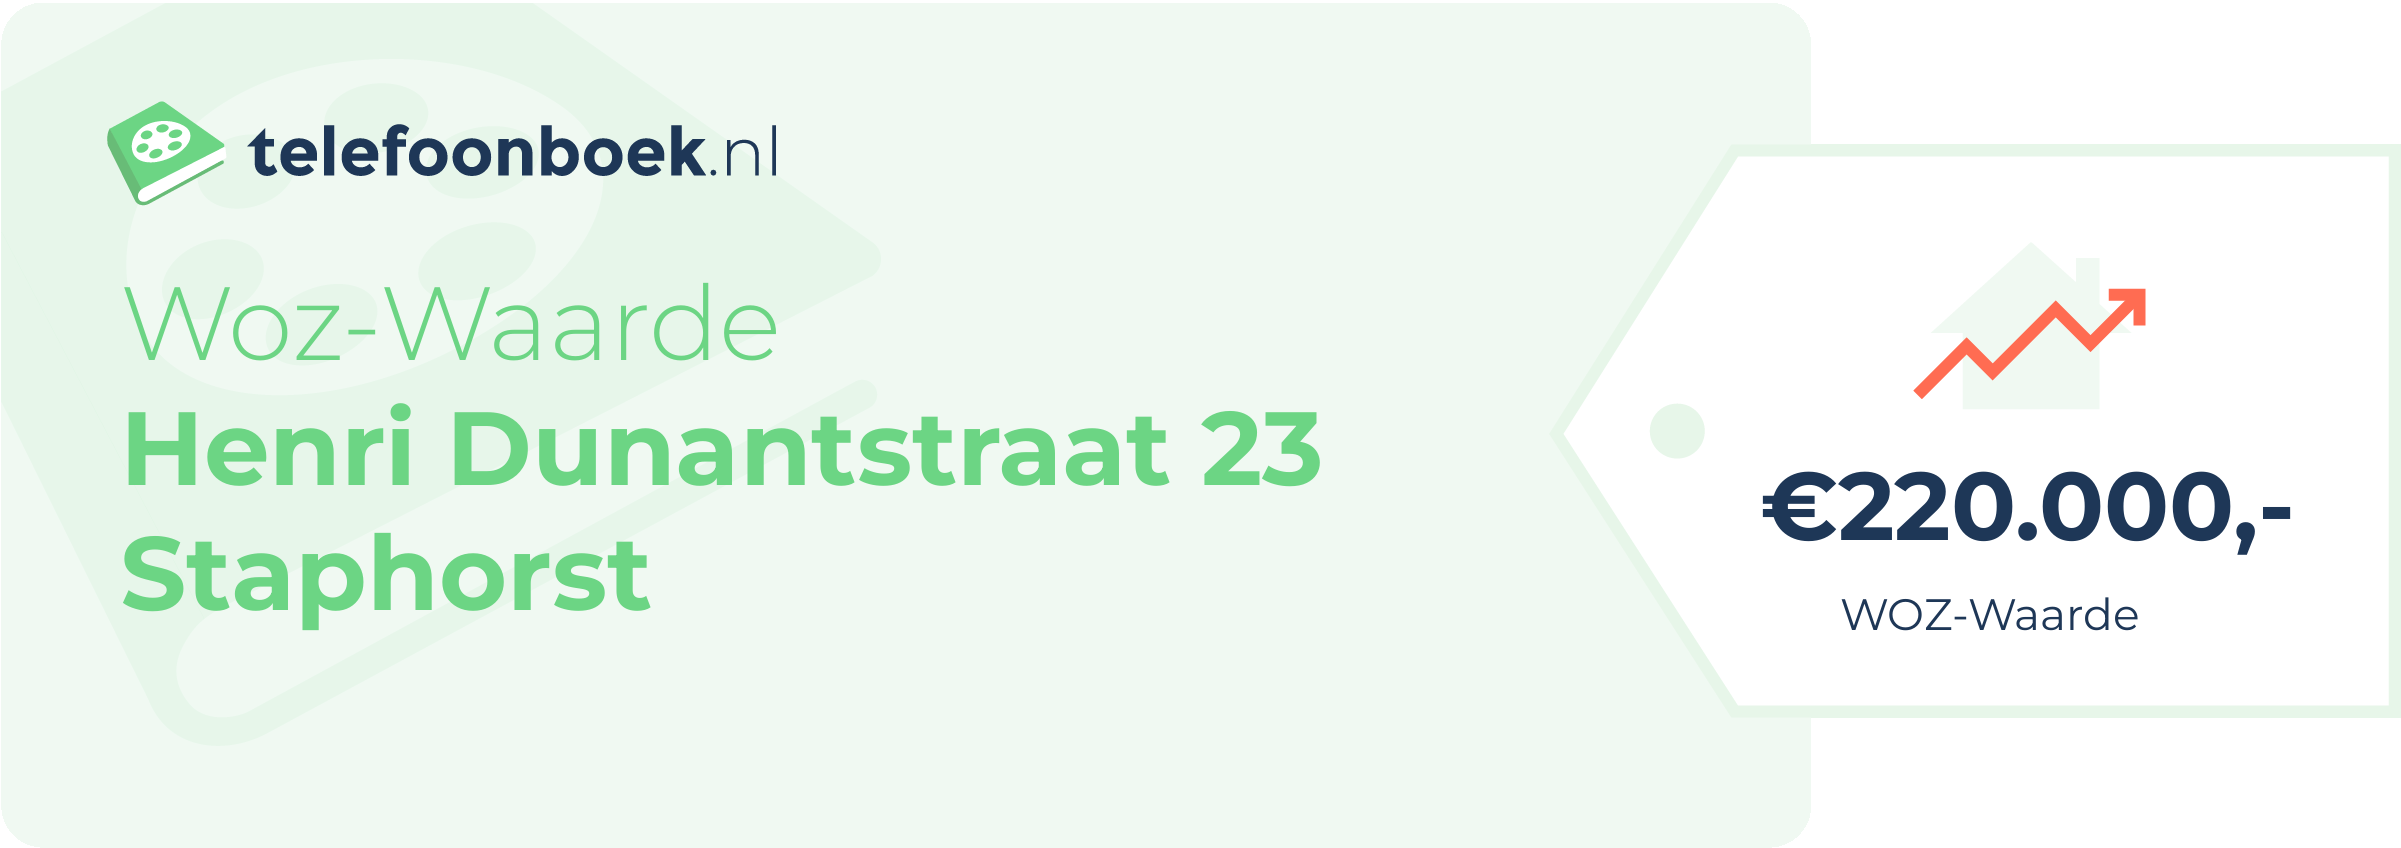 WOZ-waarde Henri Dunantstraat 23 Staphorst